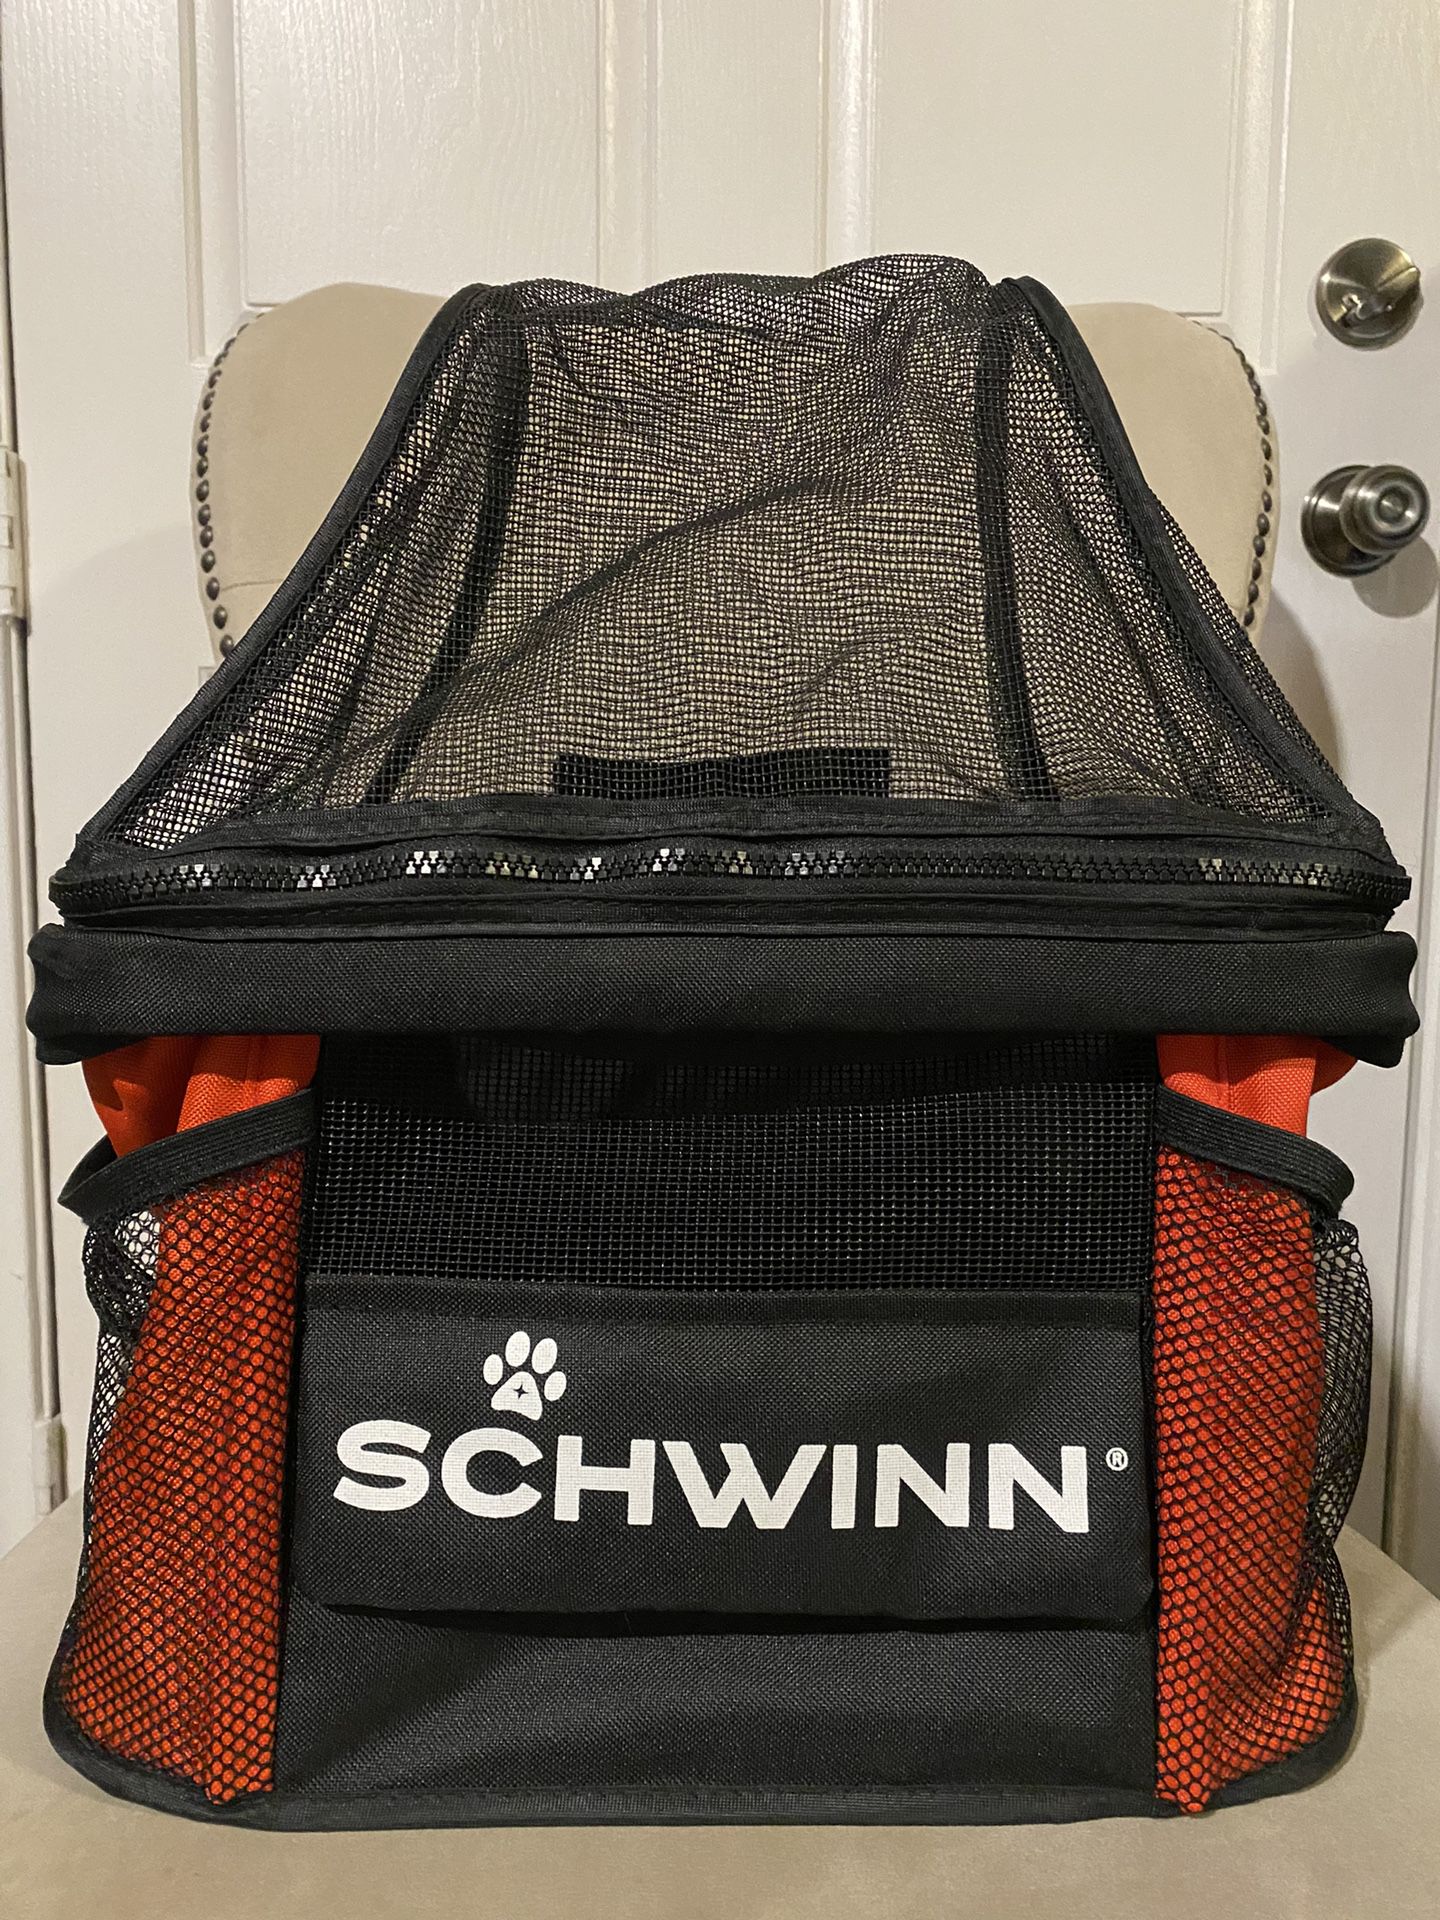 New Schwinn Pet Bike Basket/Carrier